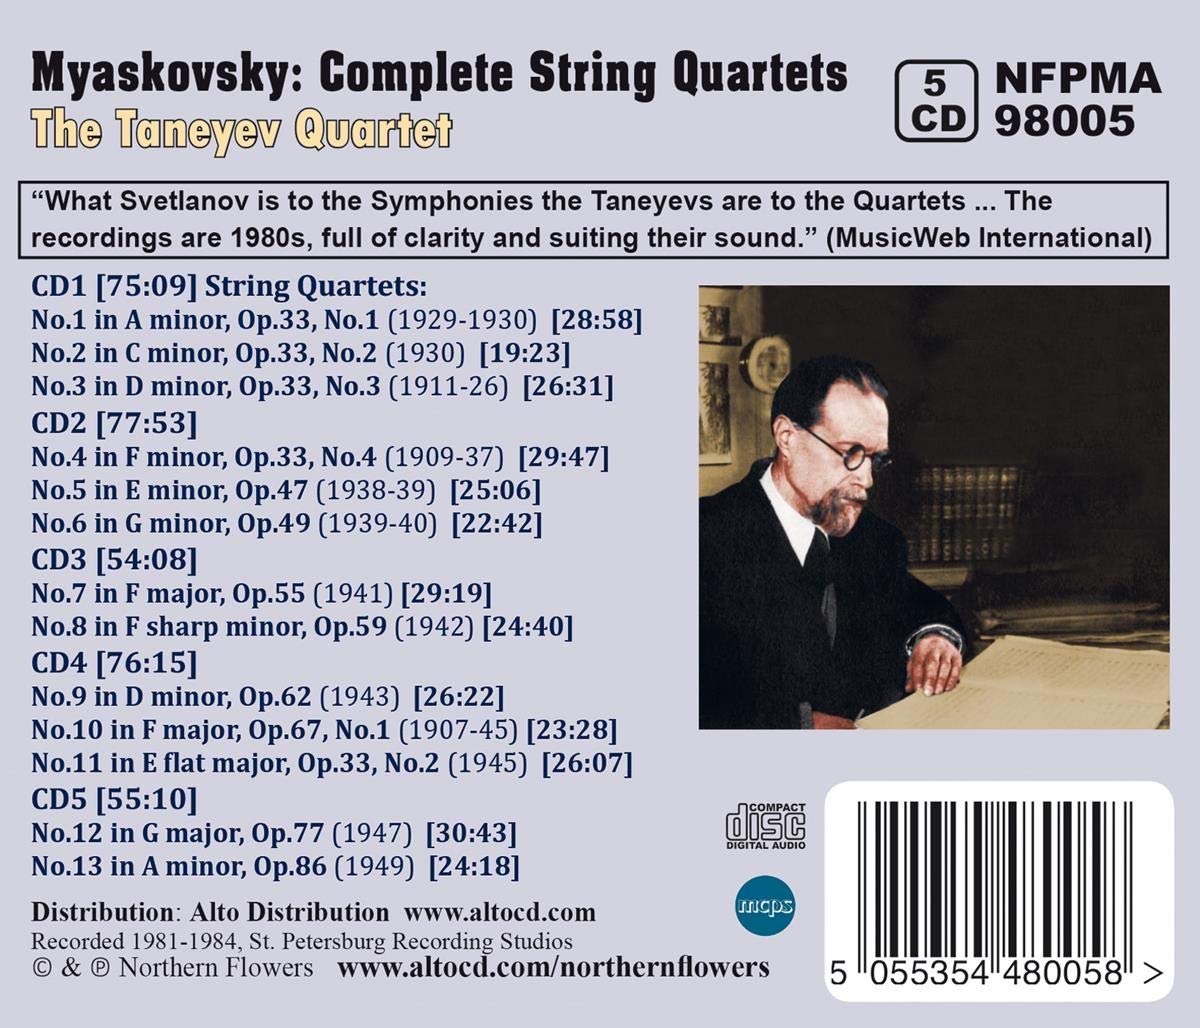 MYASKOVSKY - Complete String Quartets Nos. 1-13 - TANAYEV QUARTET (5 CDS)